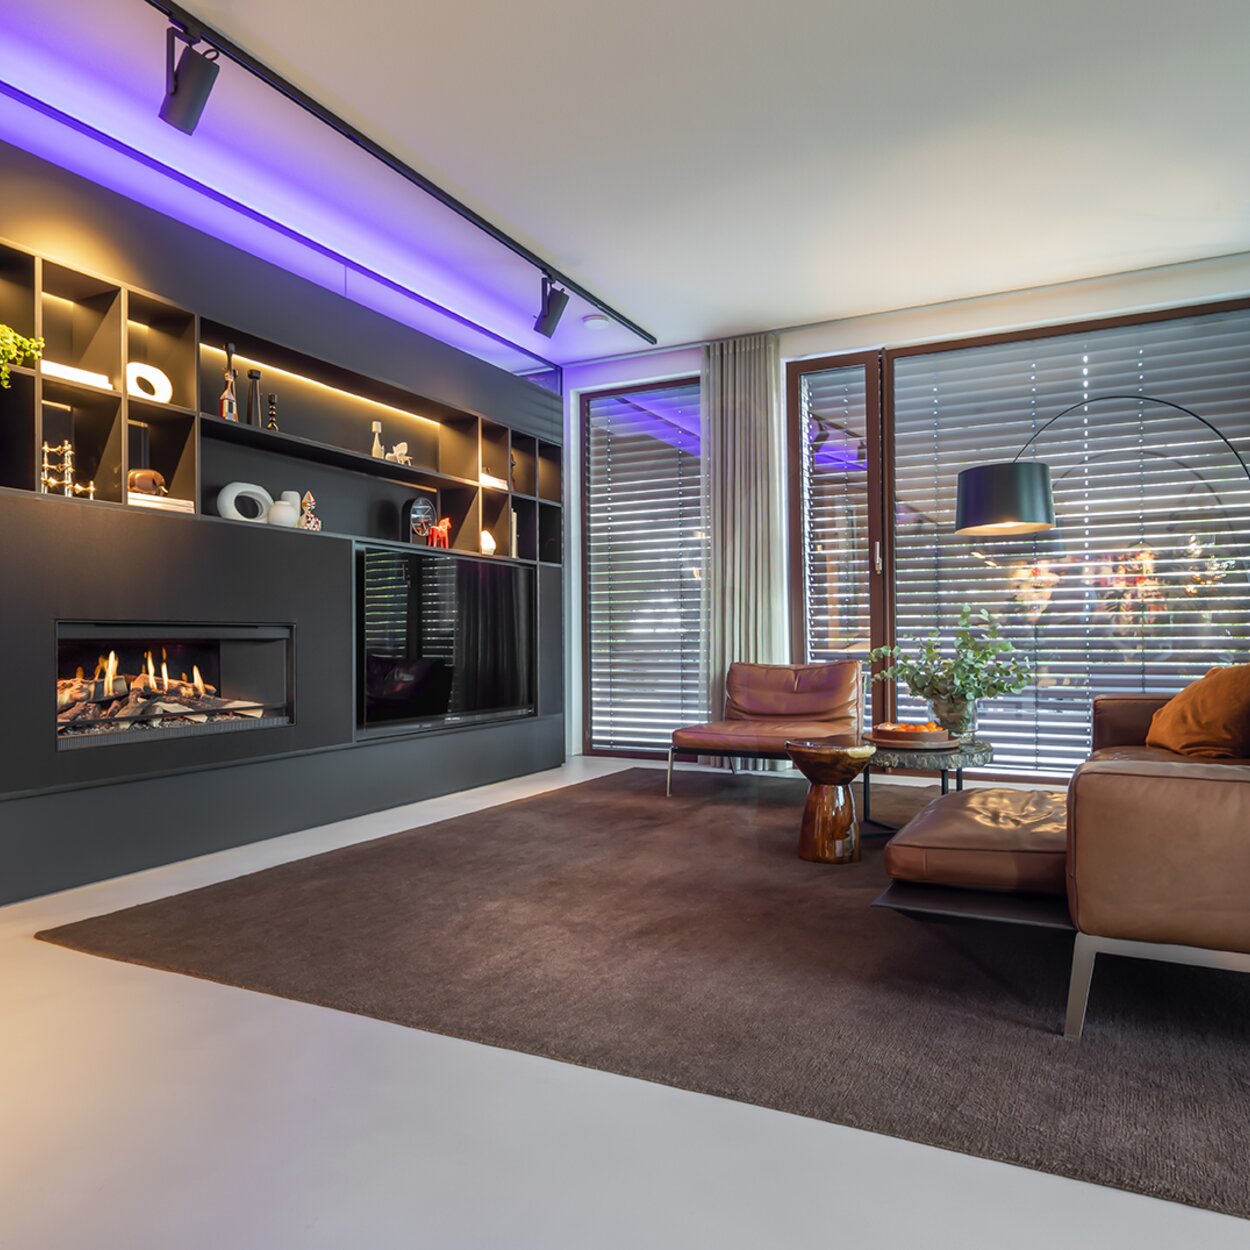 Il caminetto elettrico E-One 100 Front è integrato nell'arredamento del soggiorno in nero con illuminazione a LED.